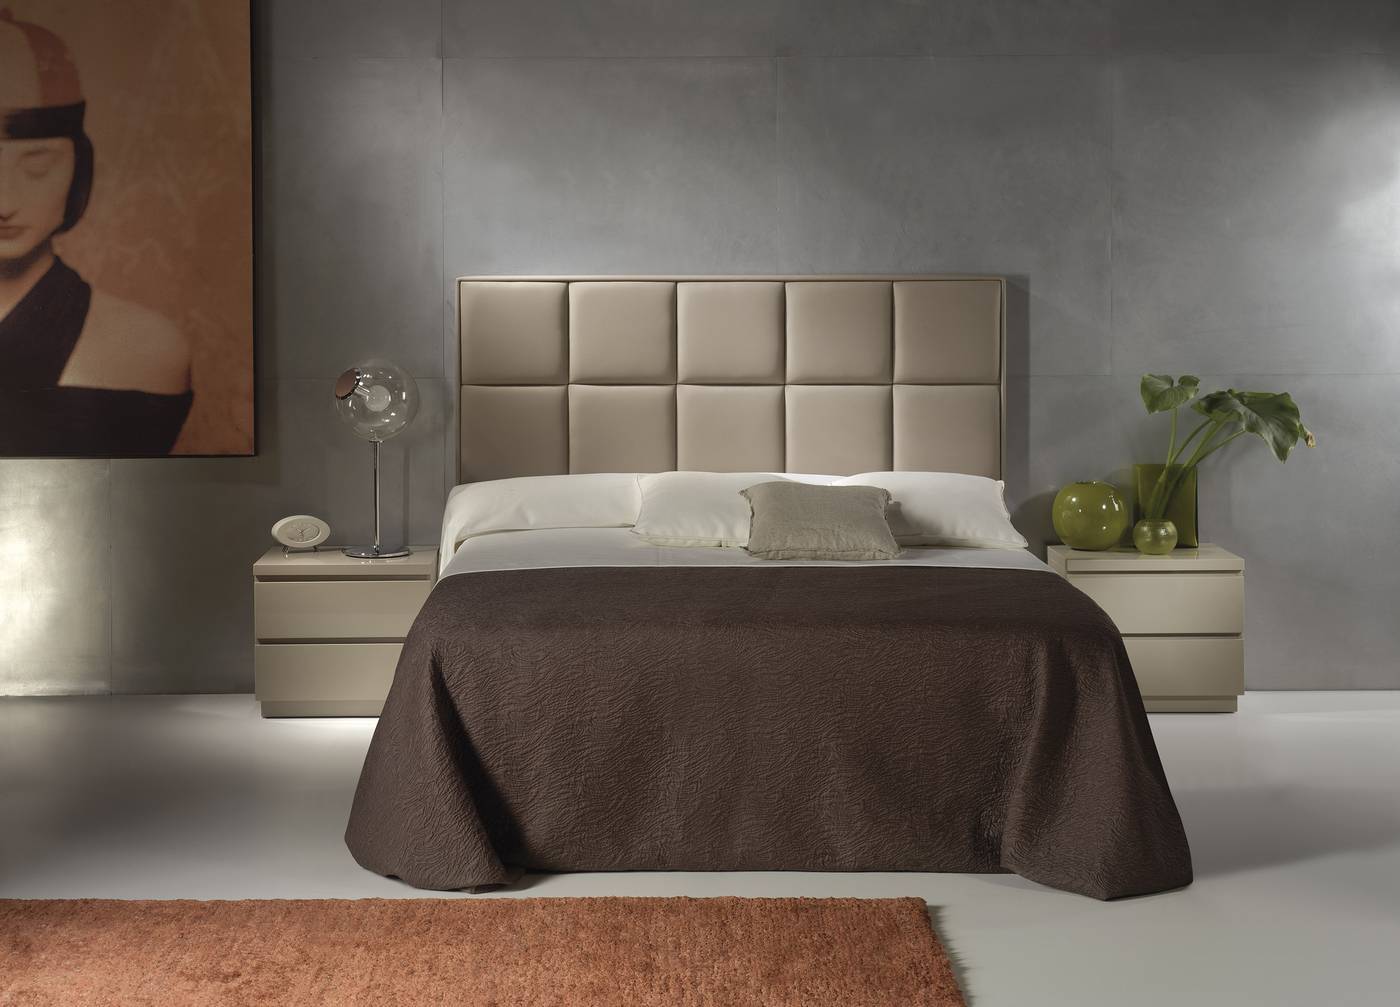 Cama Fija LD Noa - Cama con bañera fija tapizada en polipiel, tela o terciopelo, para cama de 150 cm, disponible en varios colores.